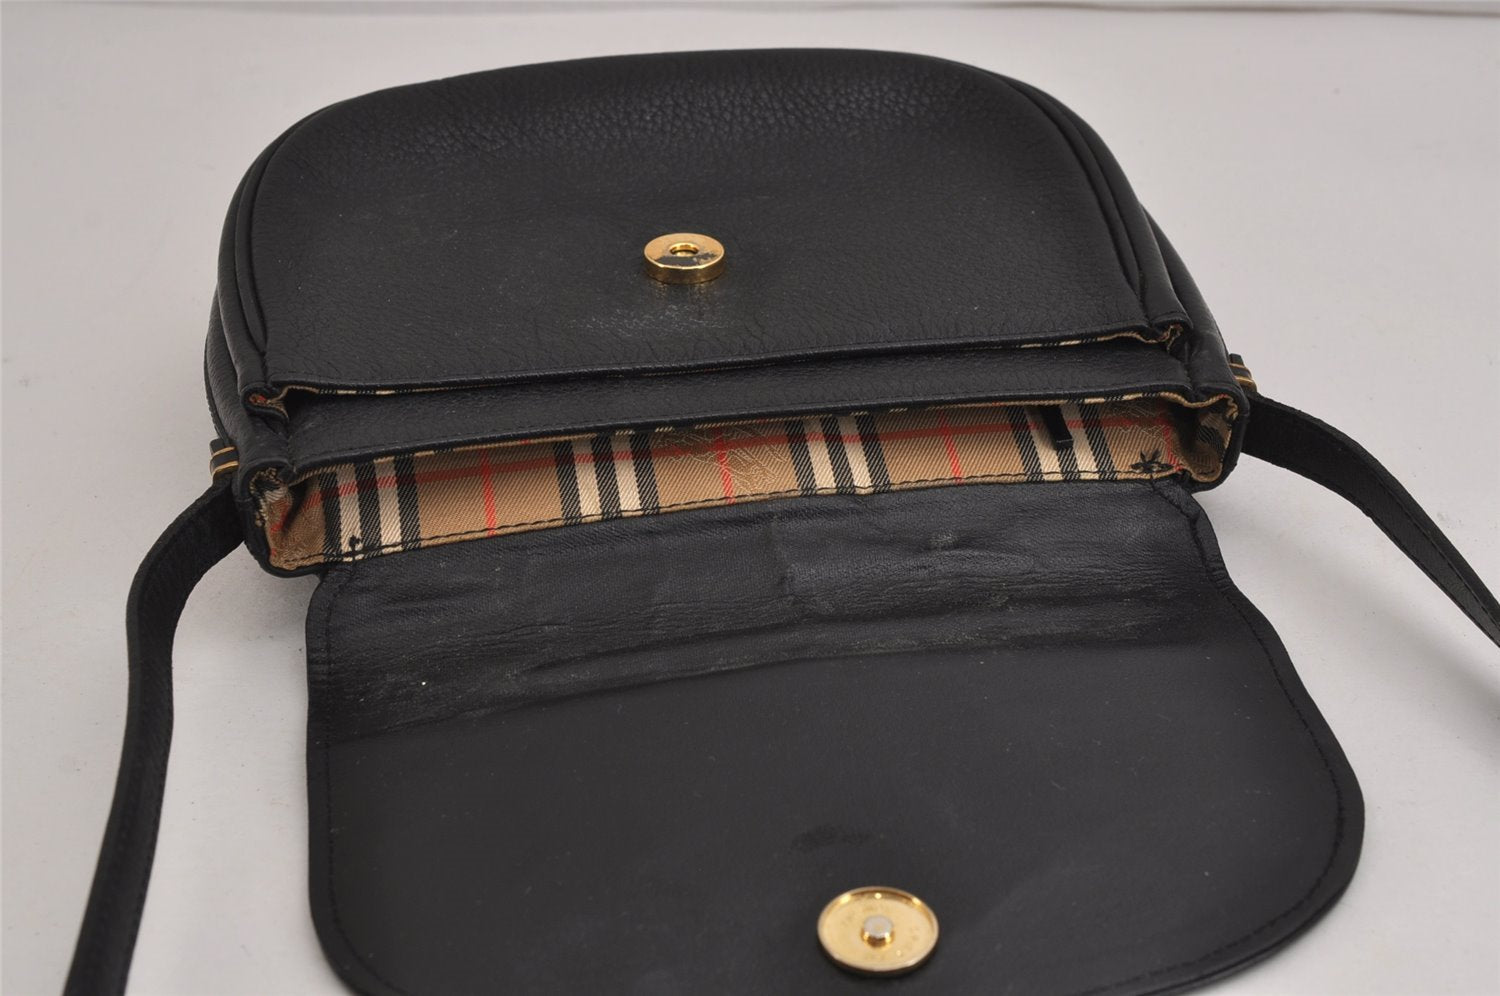 Authentic Burberrys Vintage Leather Shoulder Cross Body Bag Purse Black 4365J